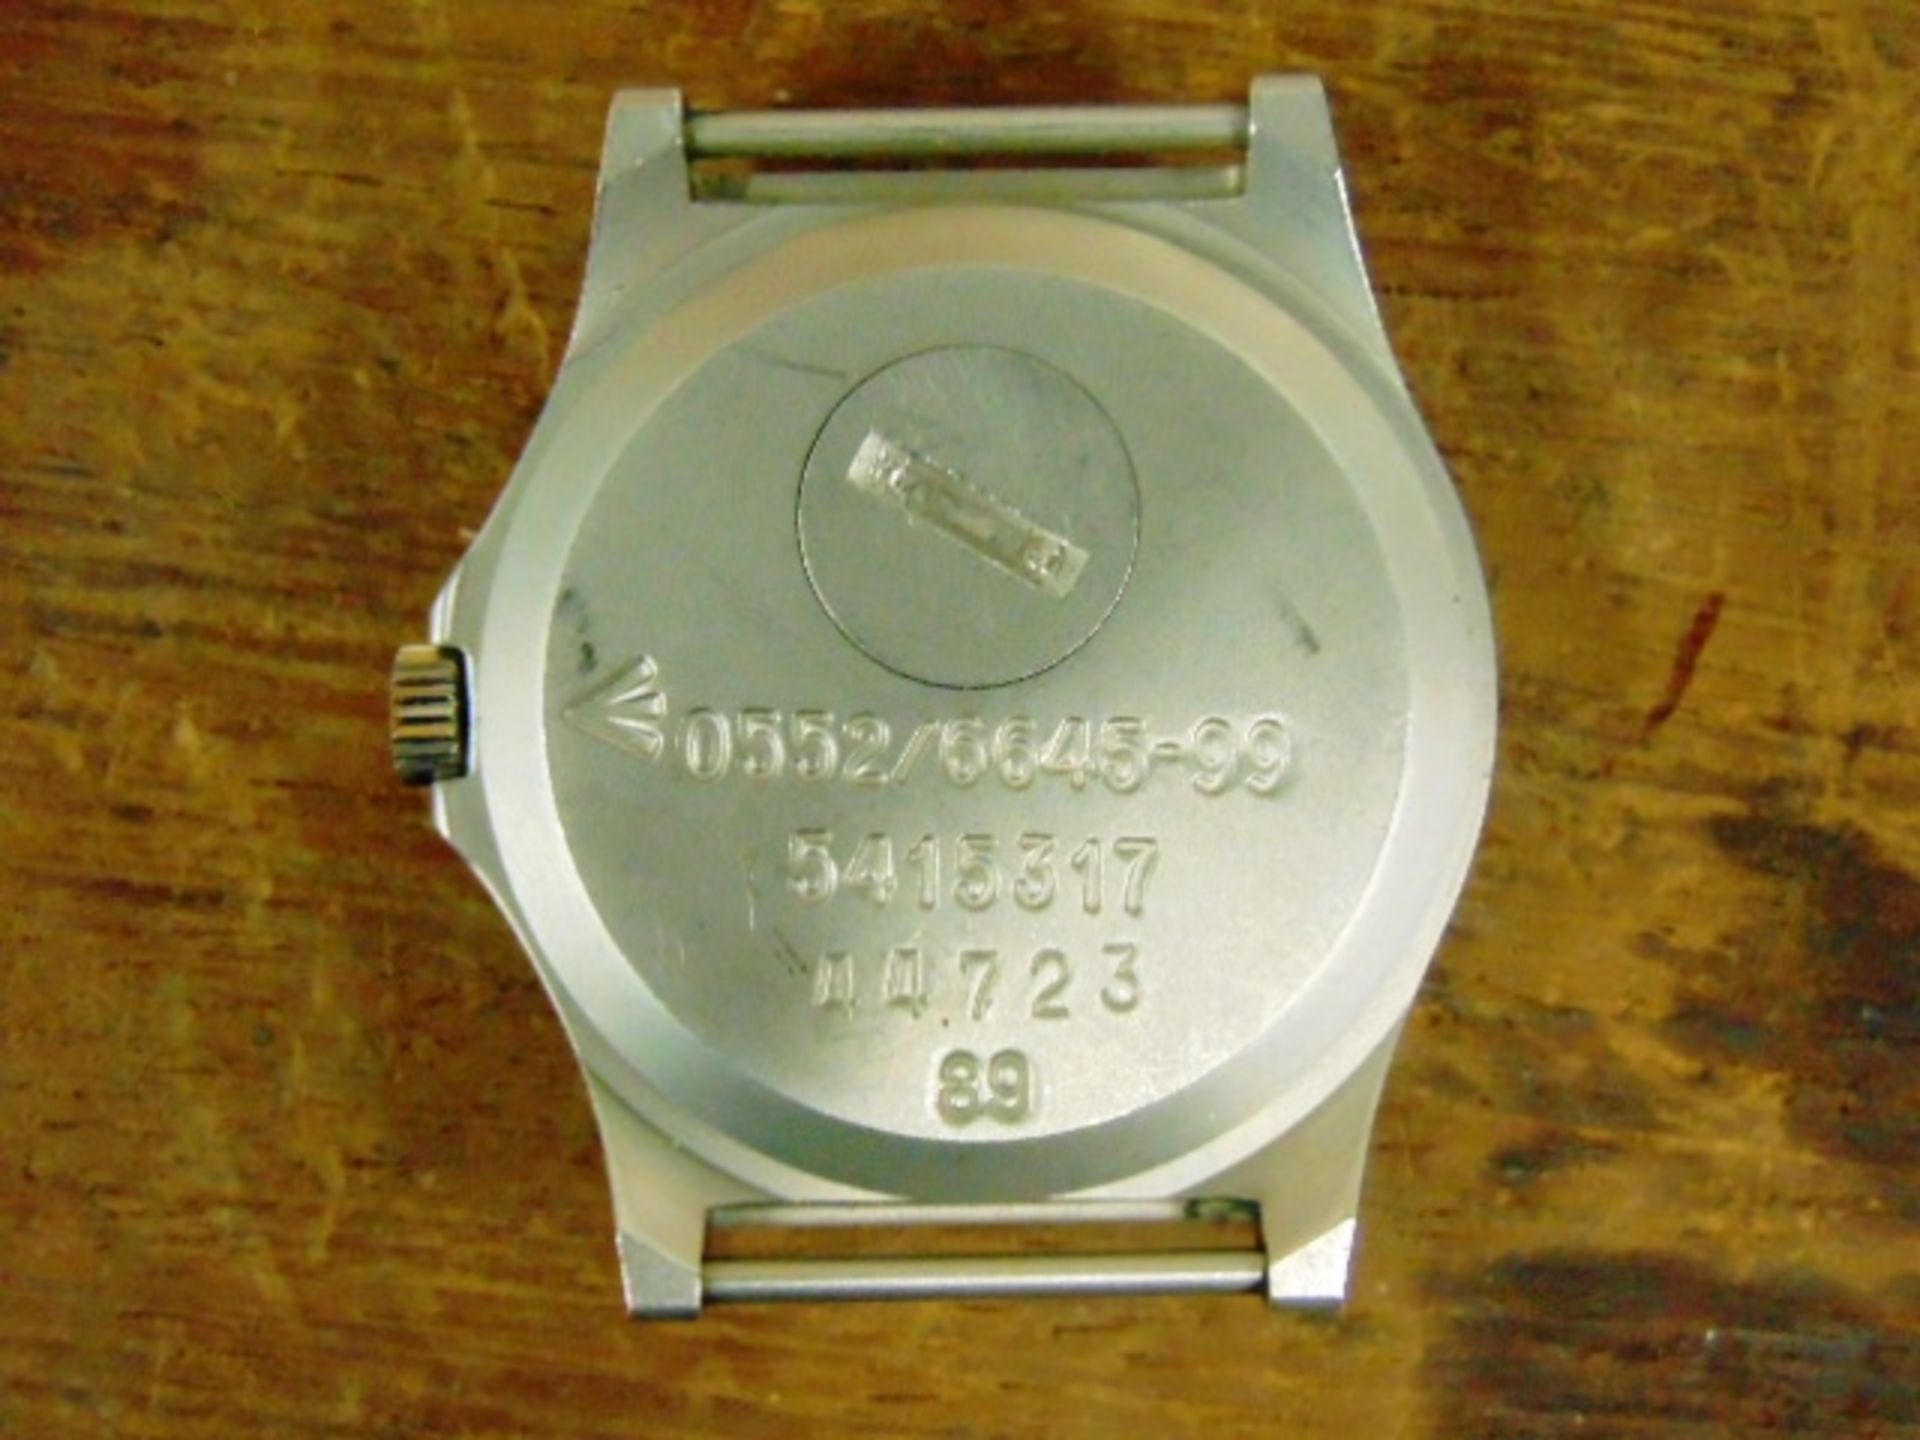 Unissued Genuine, Navy issue 0552, CWC quartz wrist watch - Image 6 of 6